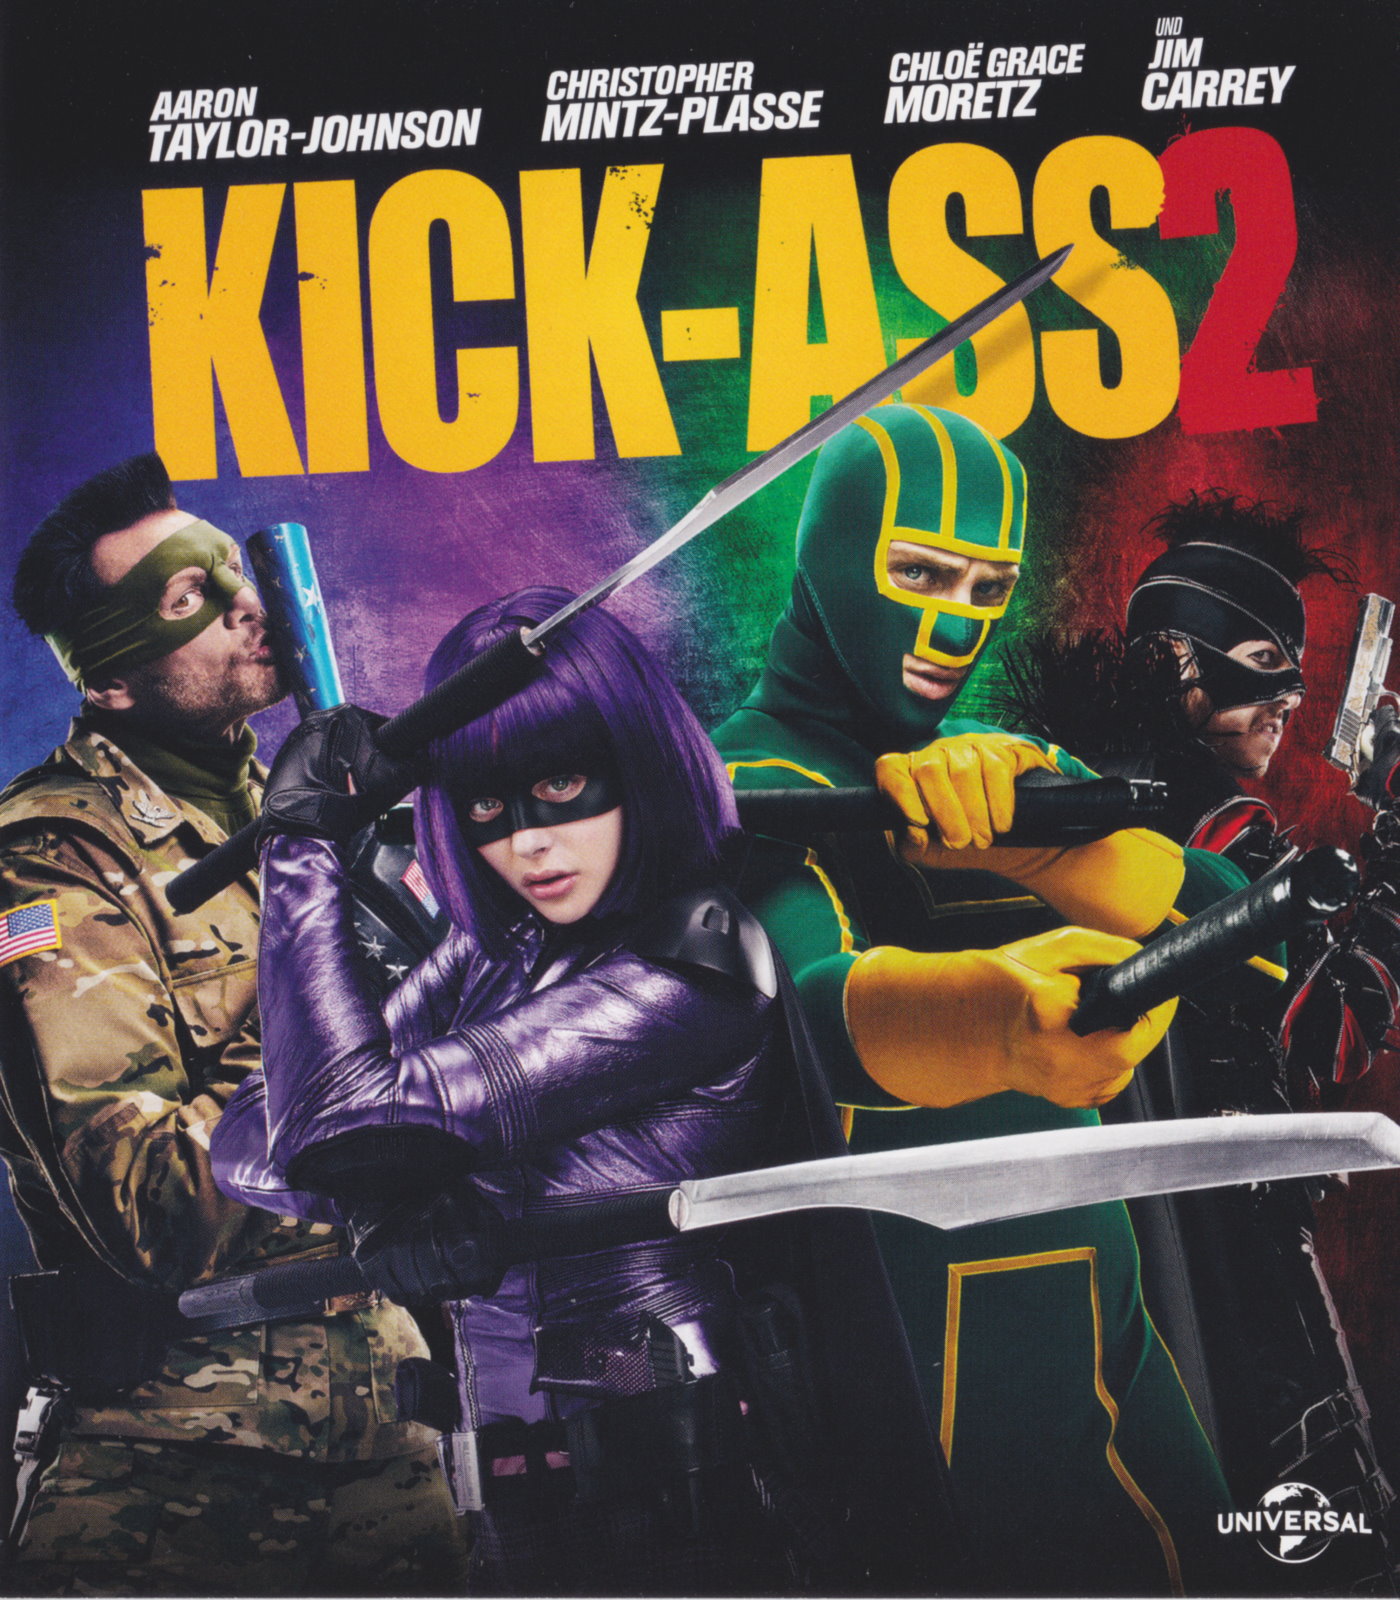 Cover - Kick-Ass 2.jpg